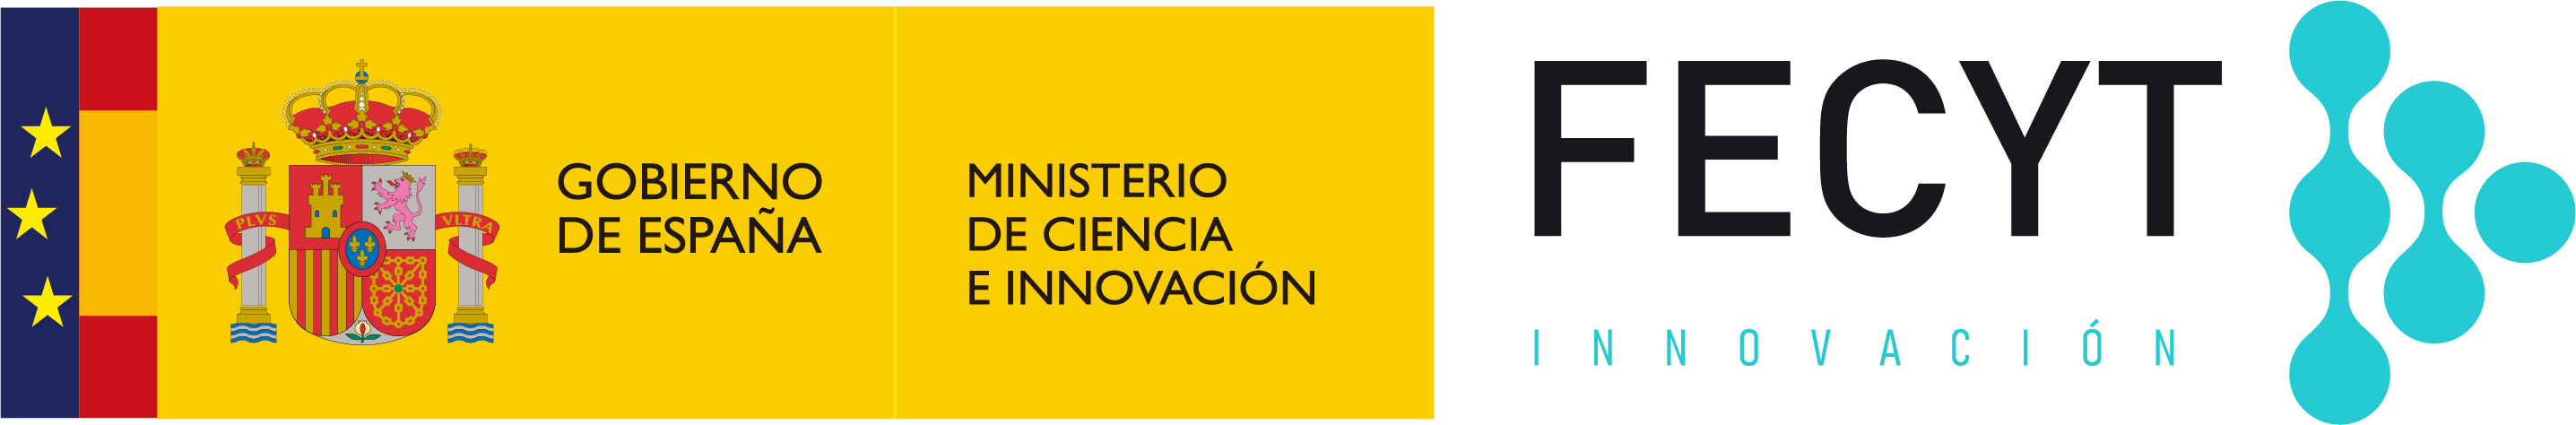 Fundación Española para la Ciencia y la Tecnología - Ministerio de Ciencia e Innovación